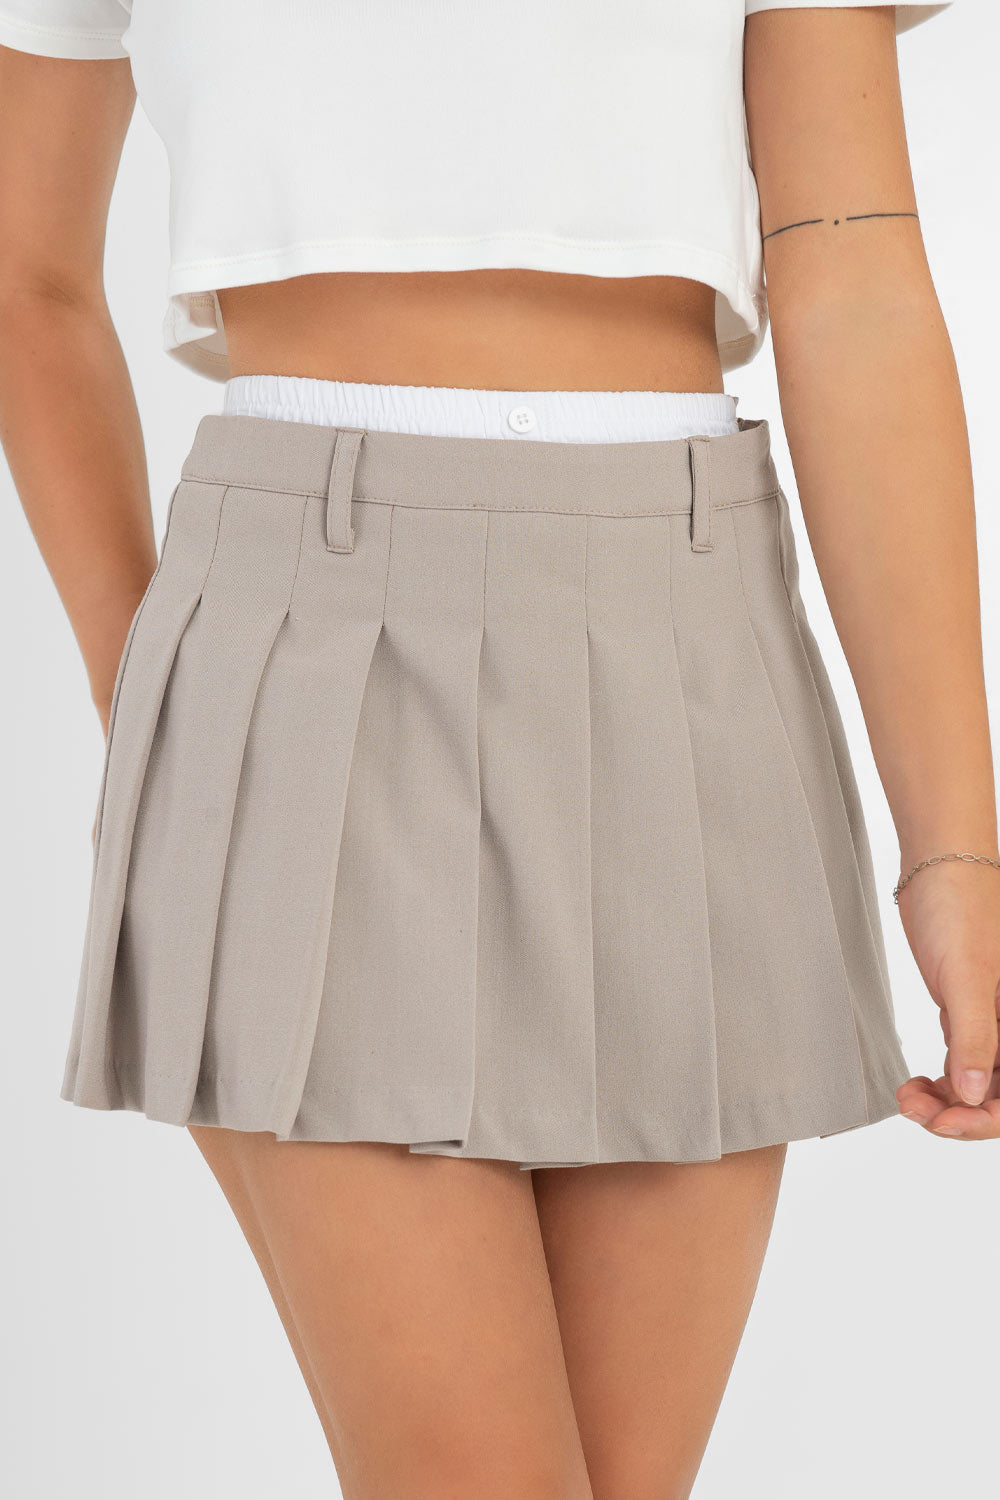 Falda corta tableada de cintura alta, pretina con trabillas y detalle de boxer en contraste. Cierre lateral con cremallera oculta.